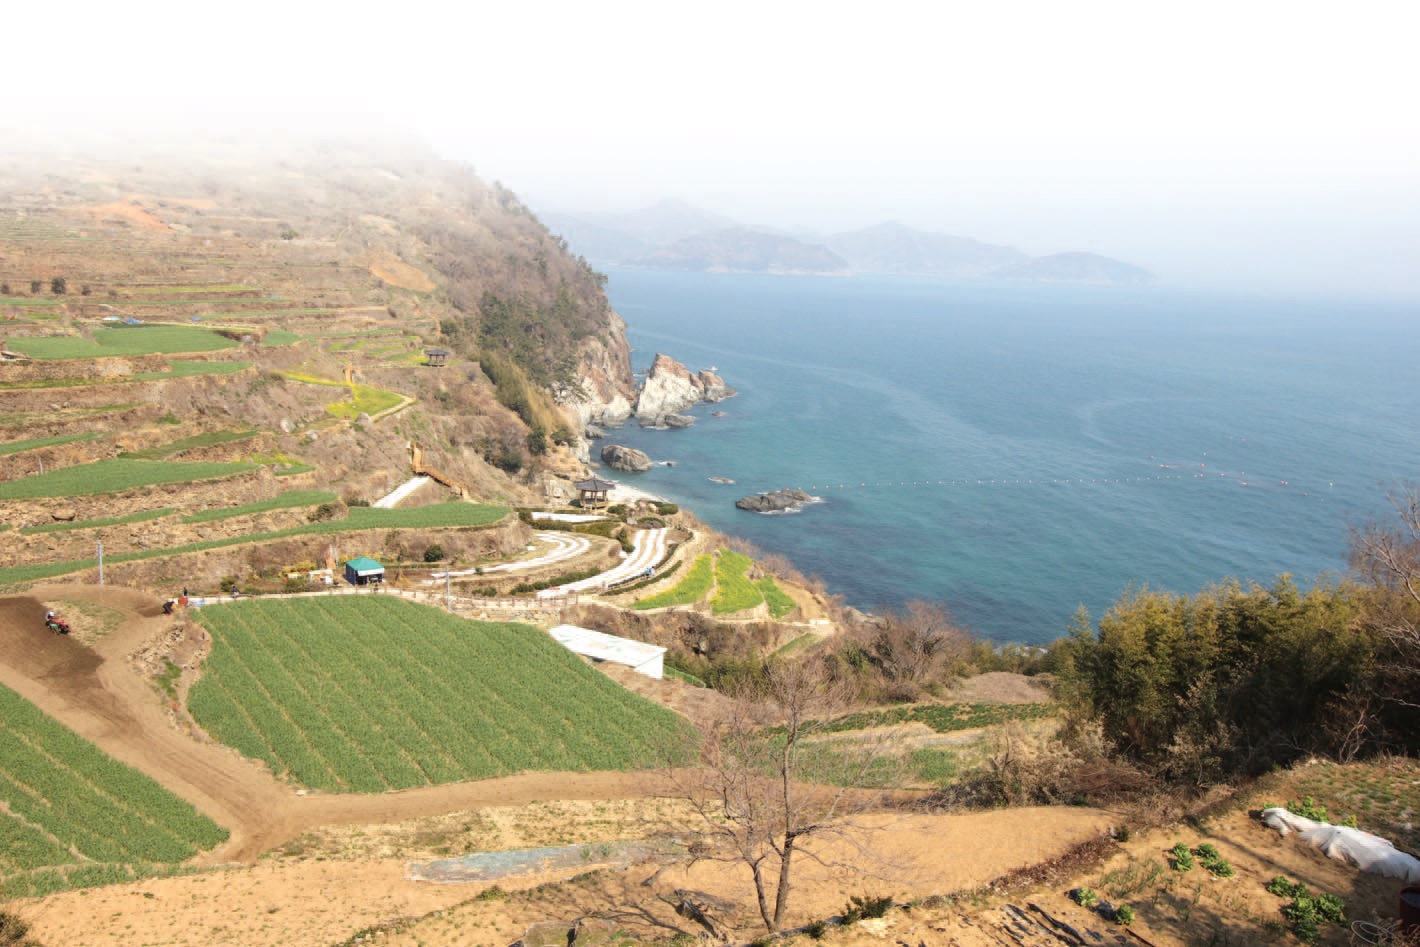 농사지을 땅이 없어 생겨난‘고단한 삶의 상징’다랭이논은 한국의 명승지가 되었다.